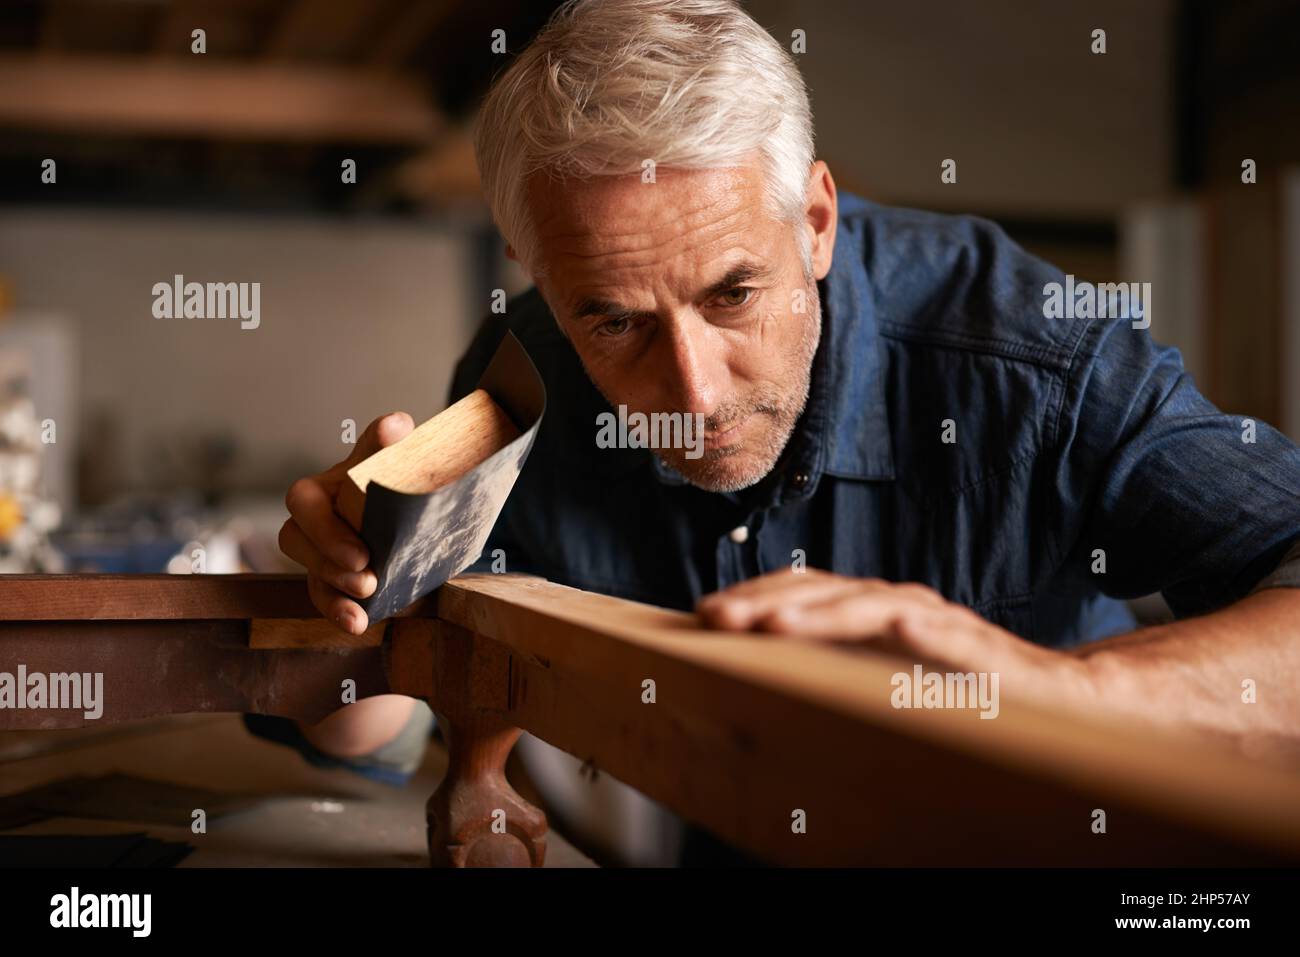 Genius ist 1 Talente und 99 harte Arbeit. Ausgeschnittene Aufnahme eines älteren Mannes, der in Innenräumen mit Holz arbeitet. Stockfoto